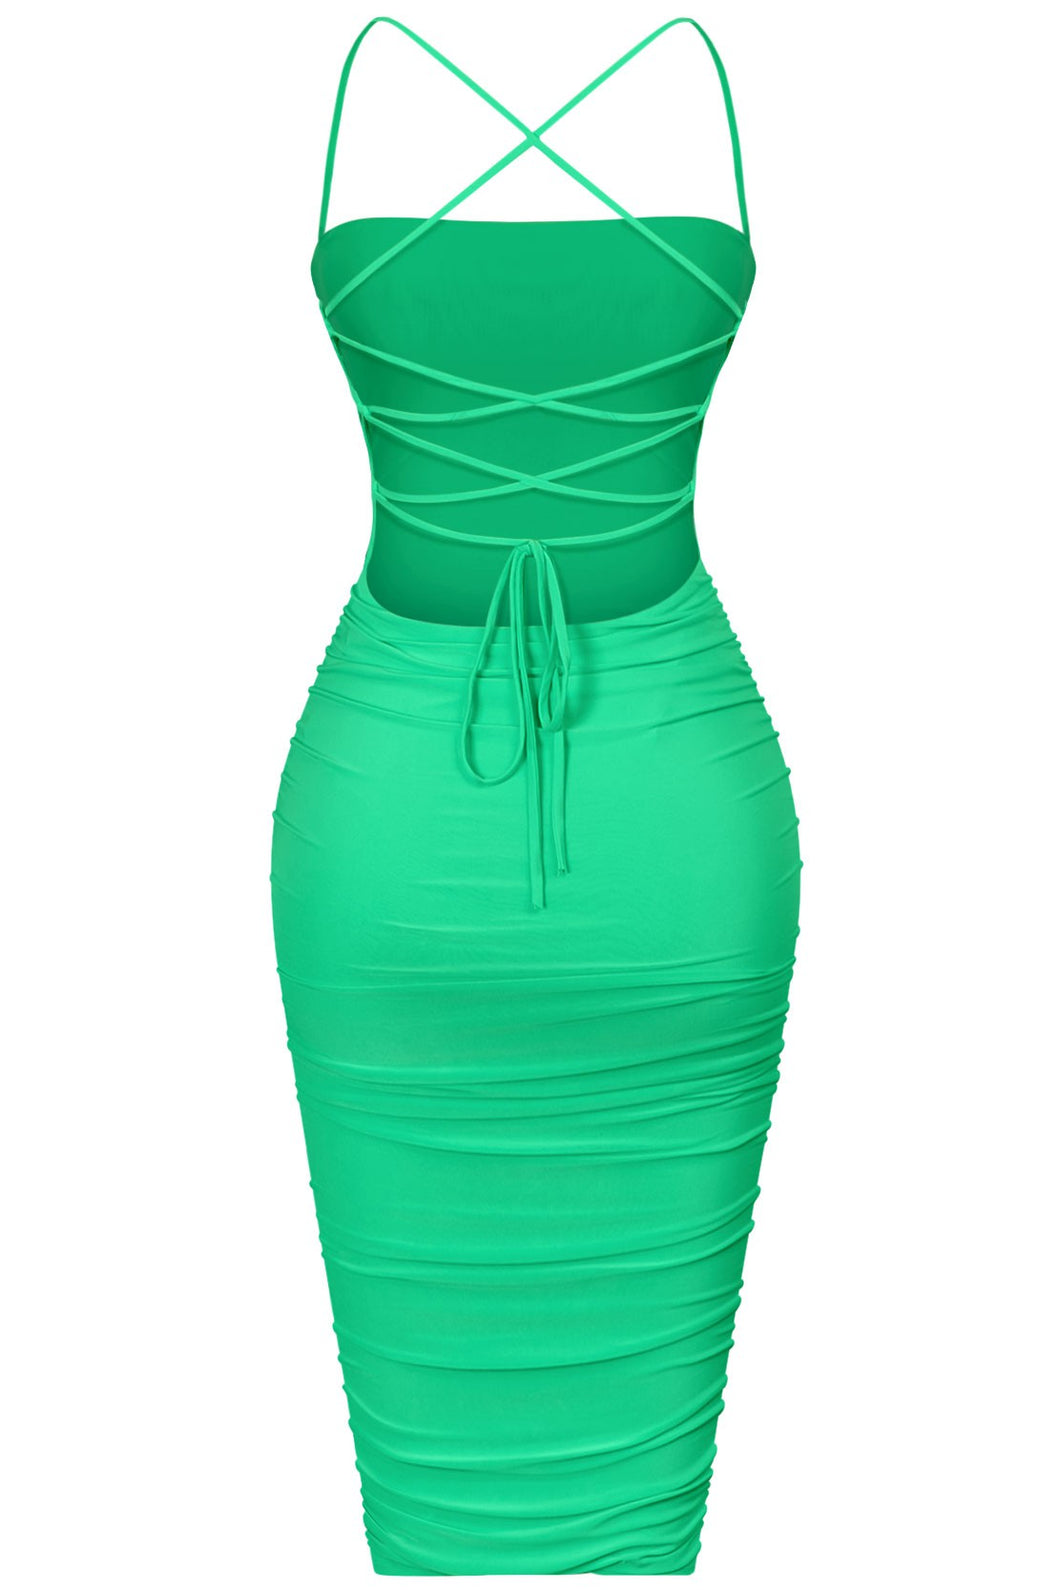 Miss Power Dress - Green